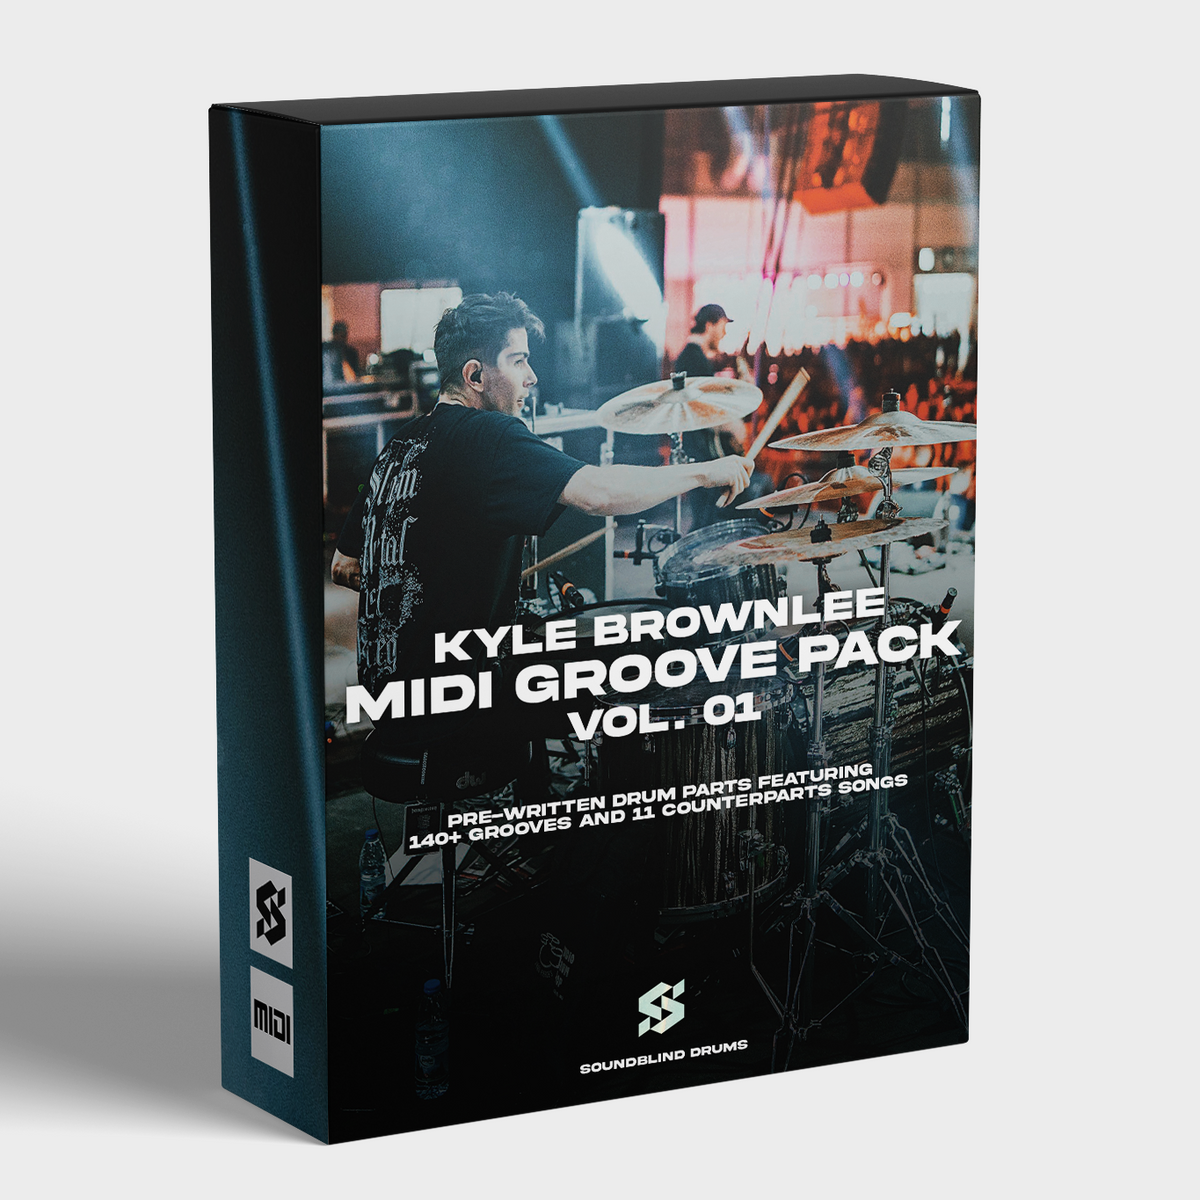 MIDI Groove Pack Vol. 1 - Kyle Brownlee